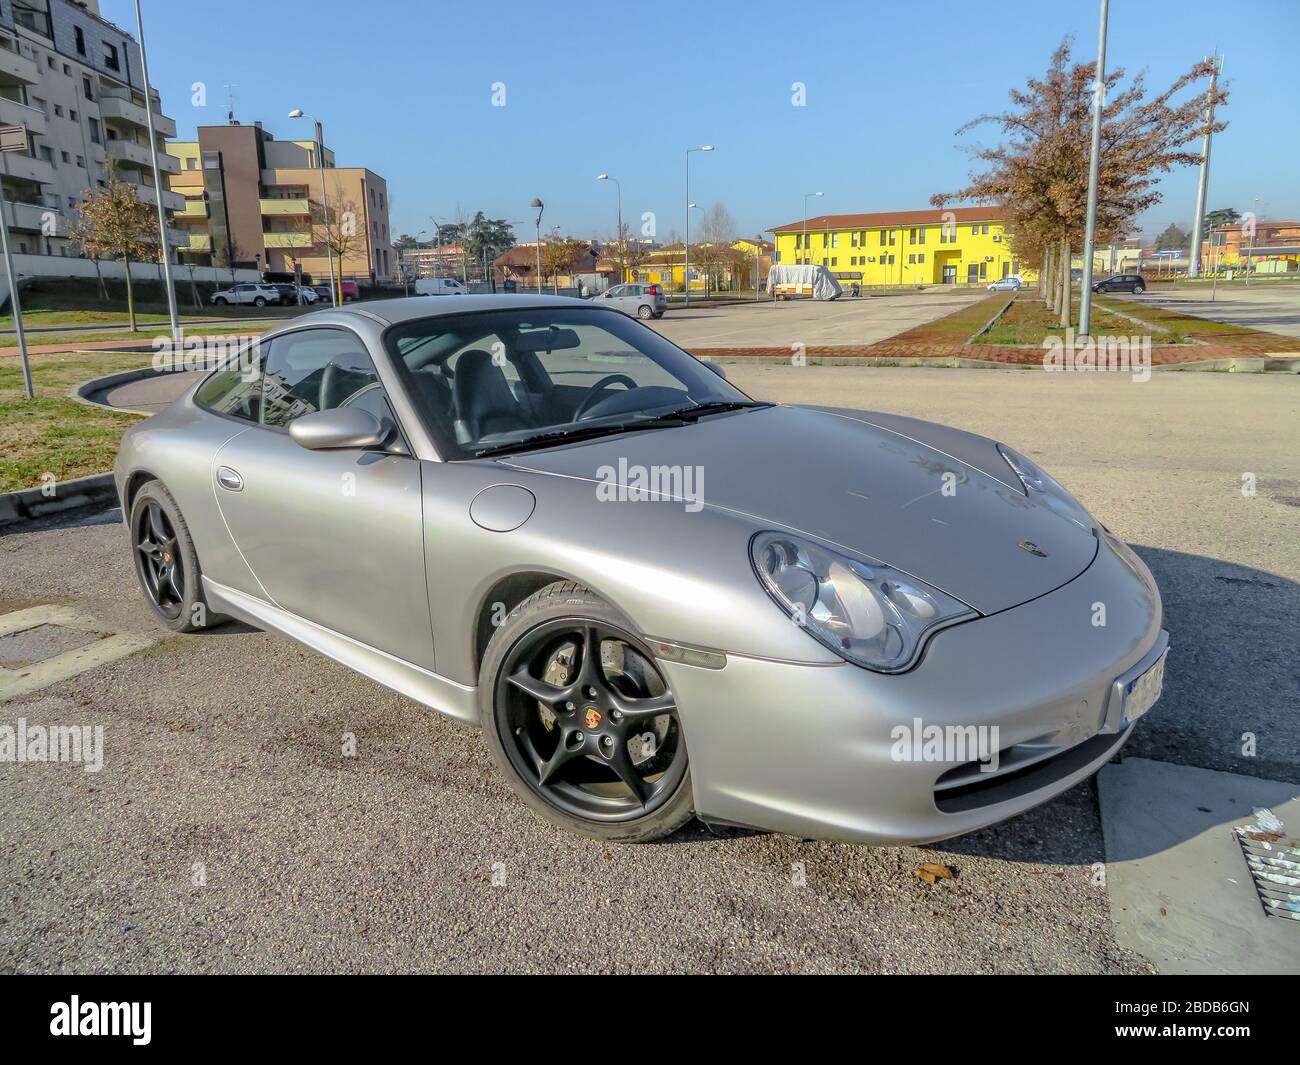 Bologna, Italien - 6. Februar 2019: Dreiviertel Blick auf einen grauen Turbosportwagen, Porsche Carrera 996 oder Porsche 911 in einem Stadtpark. Stockfoto